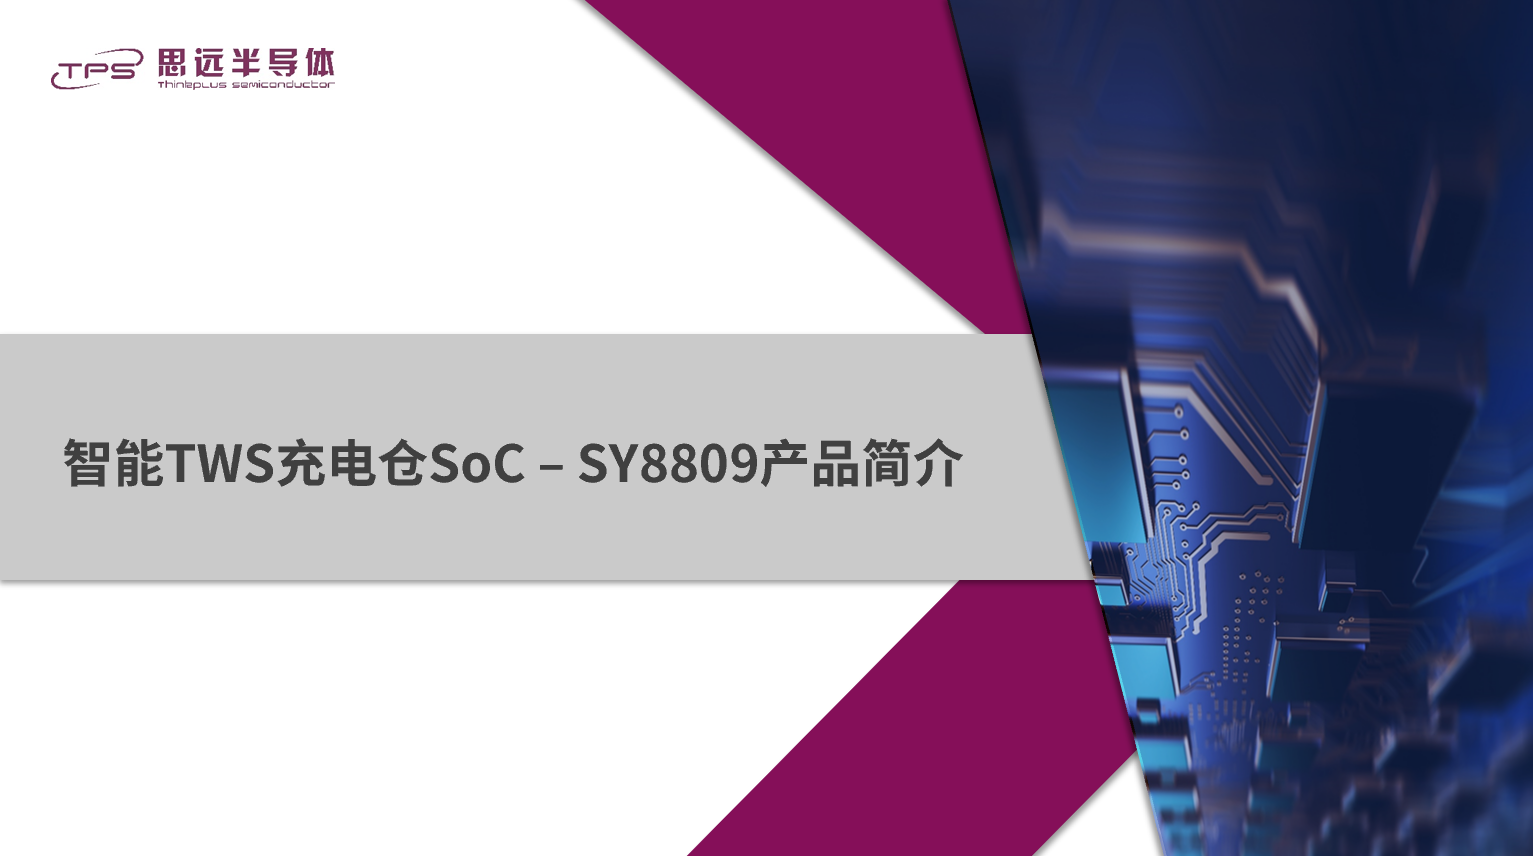 思远谈“芯”：新一代智能TWS充电仓SoC SY8809产品简介